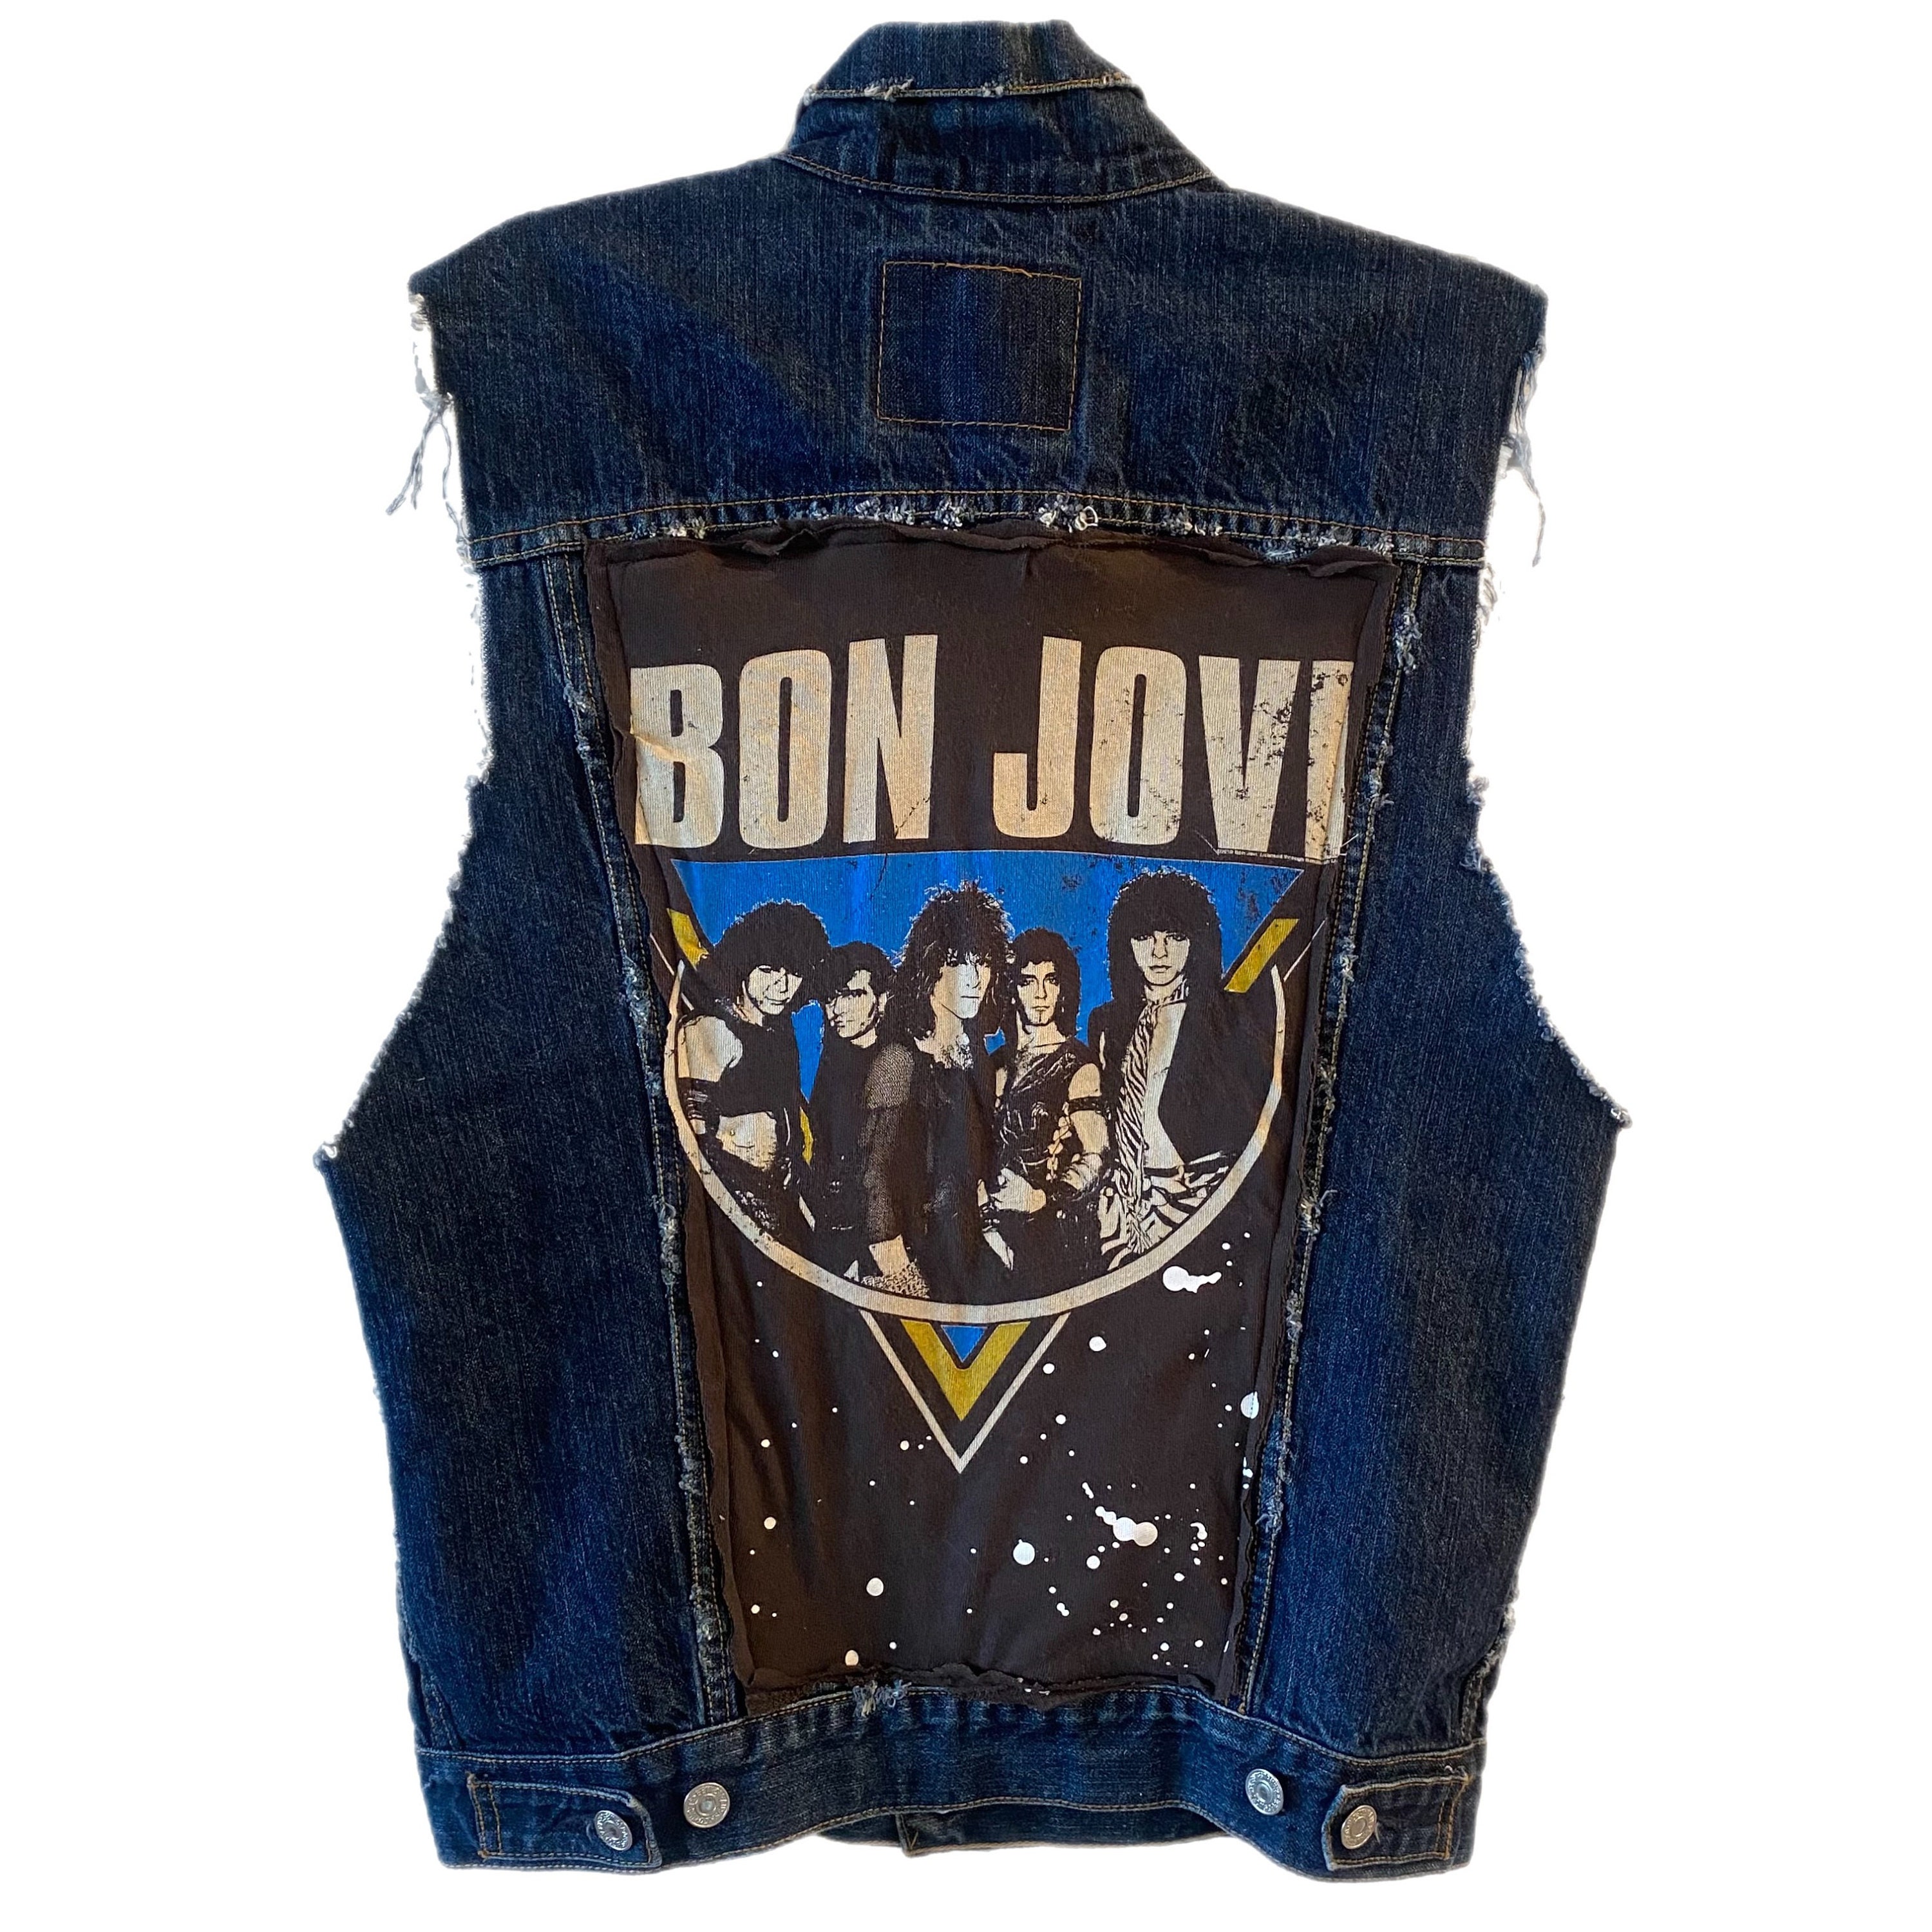 Bon Jovi Jacket - Etsy